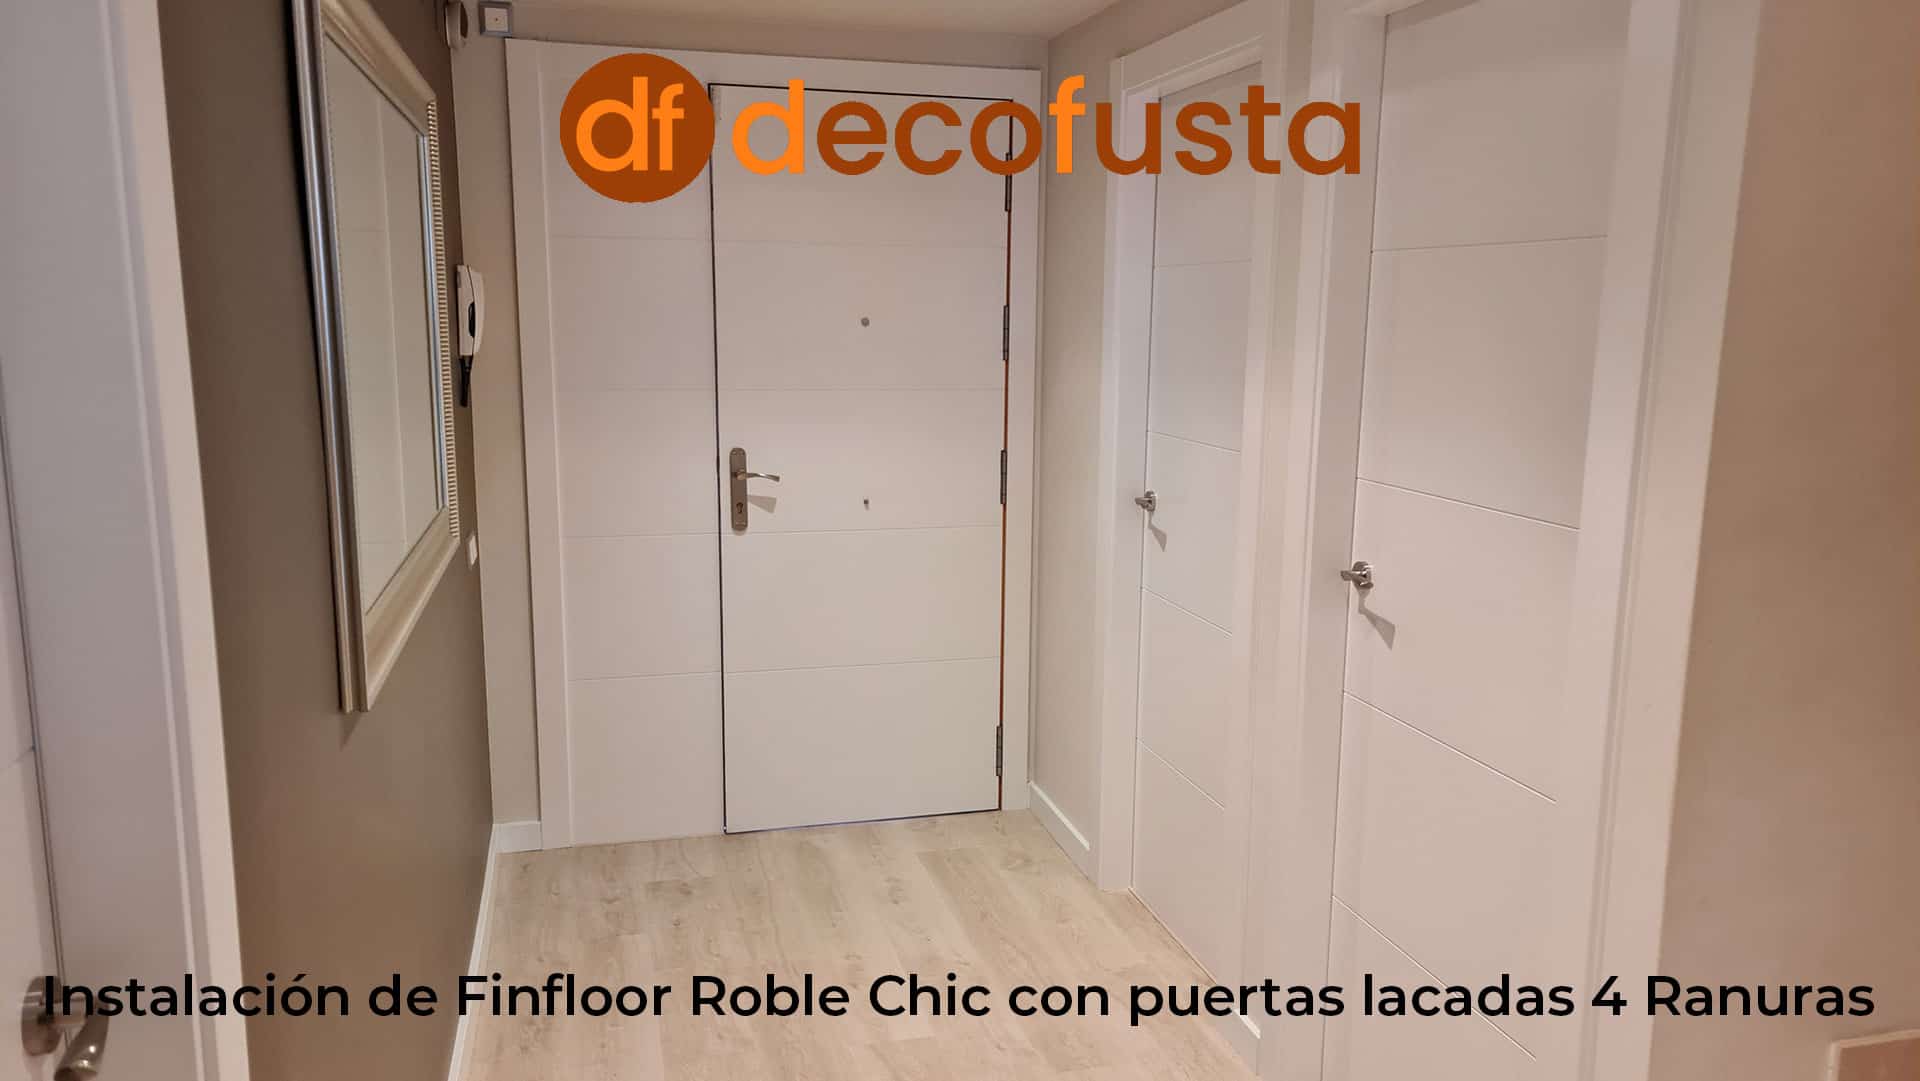 Instalación de Finfloor Roble Chic con puertas lacadas 4 Ranuras